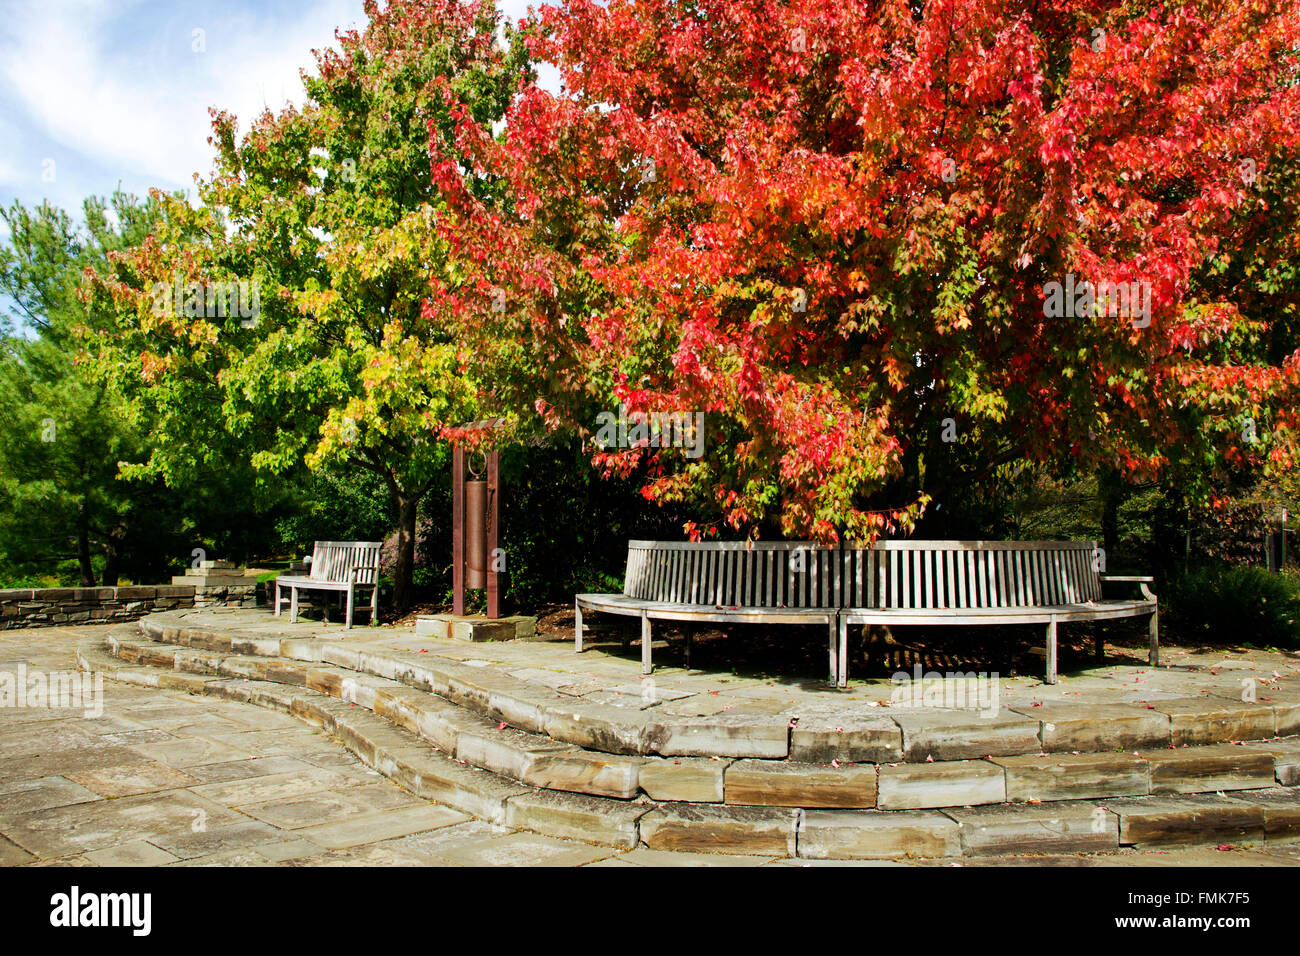 Svuotare una panchina nel parco con nessun popolo sotto la caduta di alberi presso la Cornell arboreto, regione dei laghi Finger, ithaca Tompkins County central new york stati uniti d'America. Foto Stock